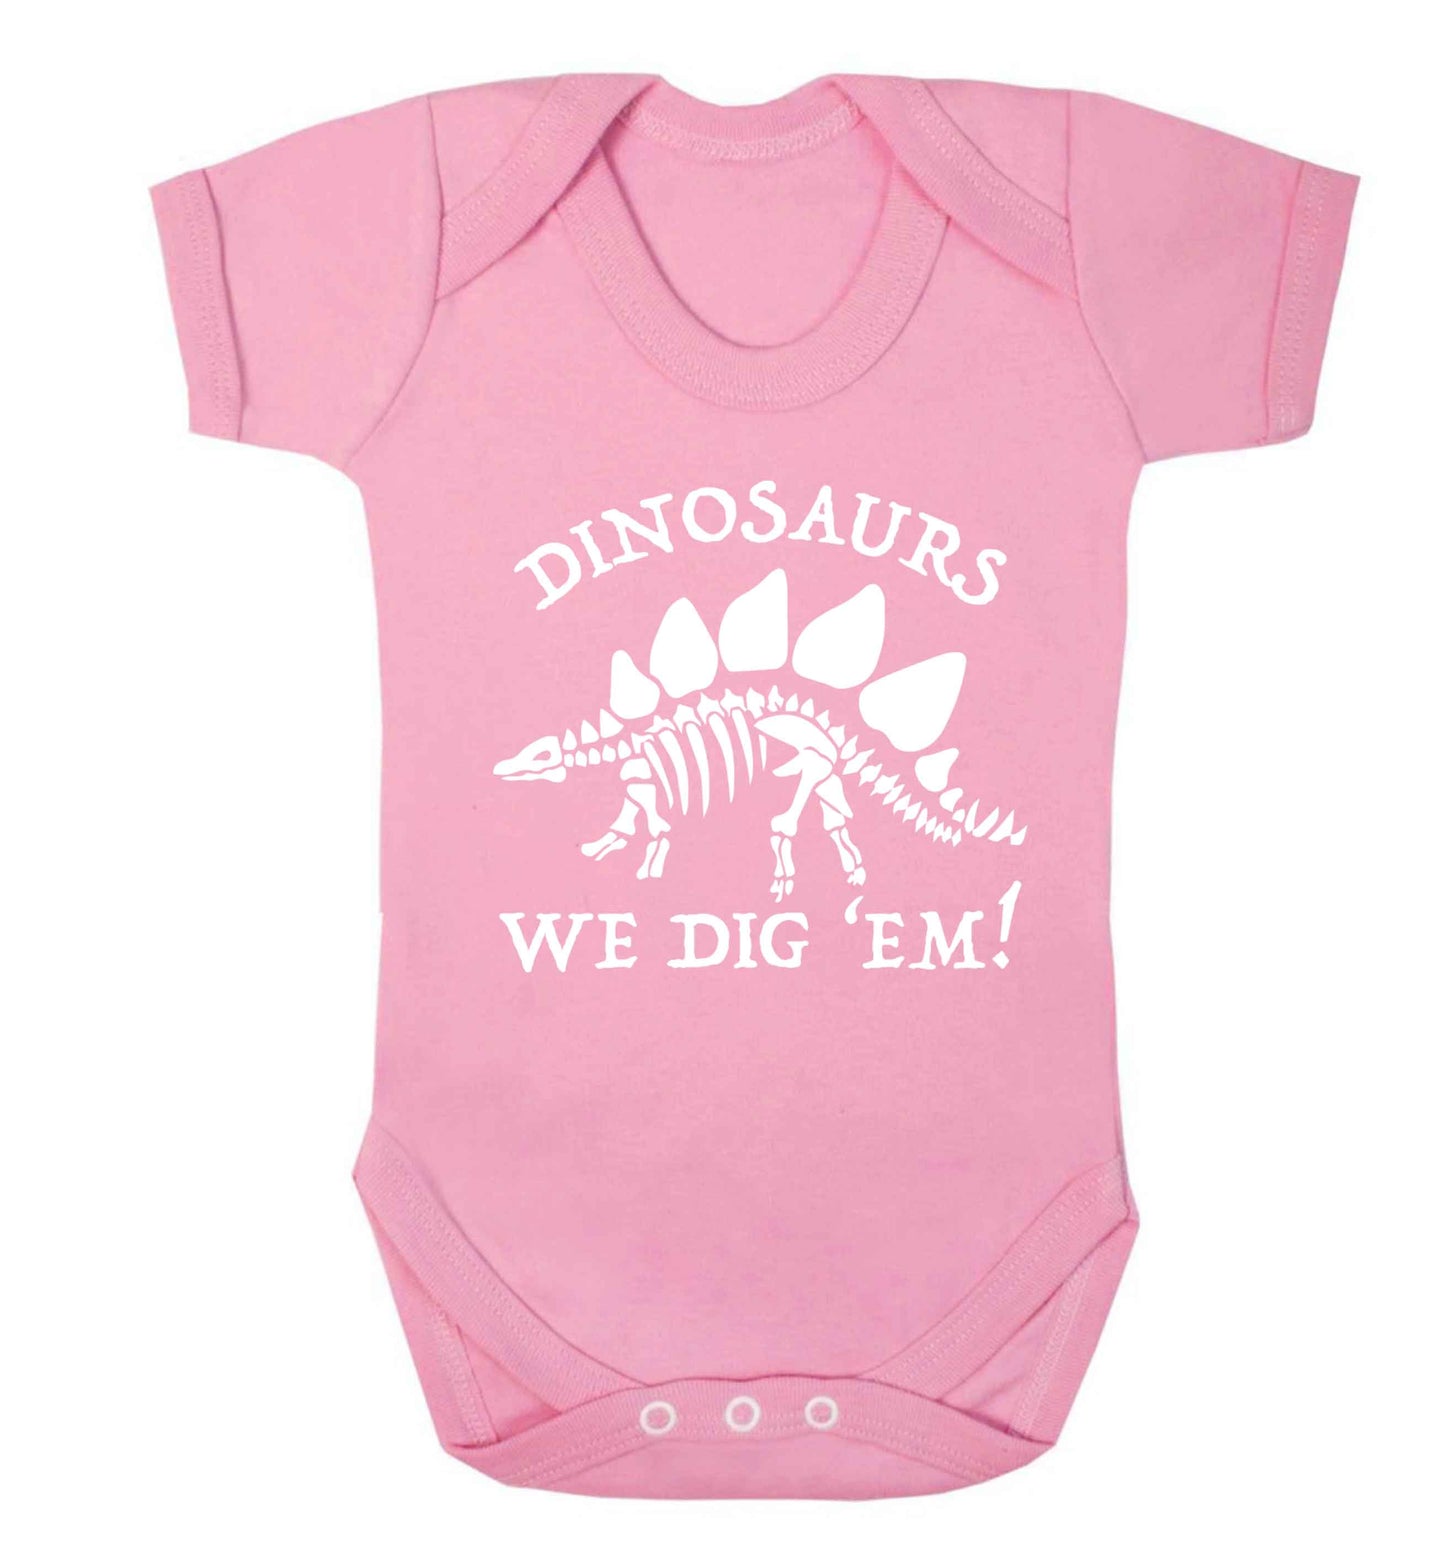 Dinosaurs we dig 'em! Baby Vest pale pink 18-24 months